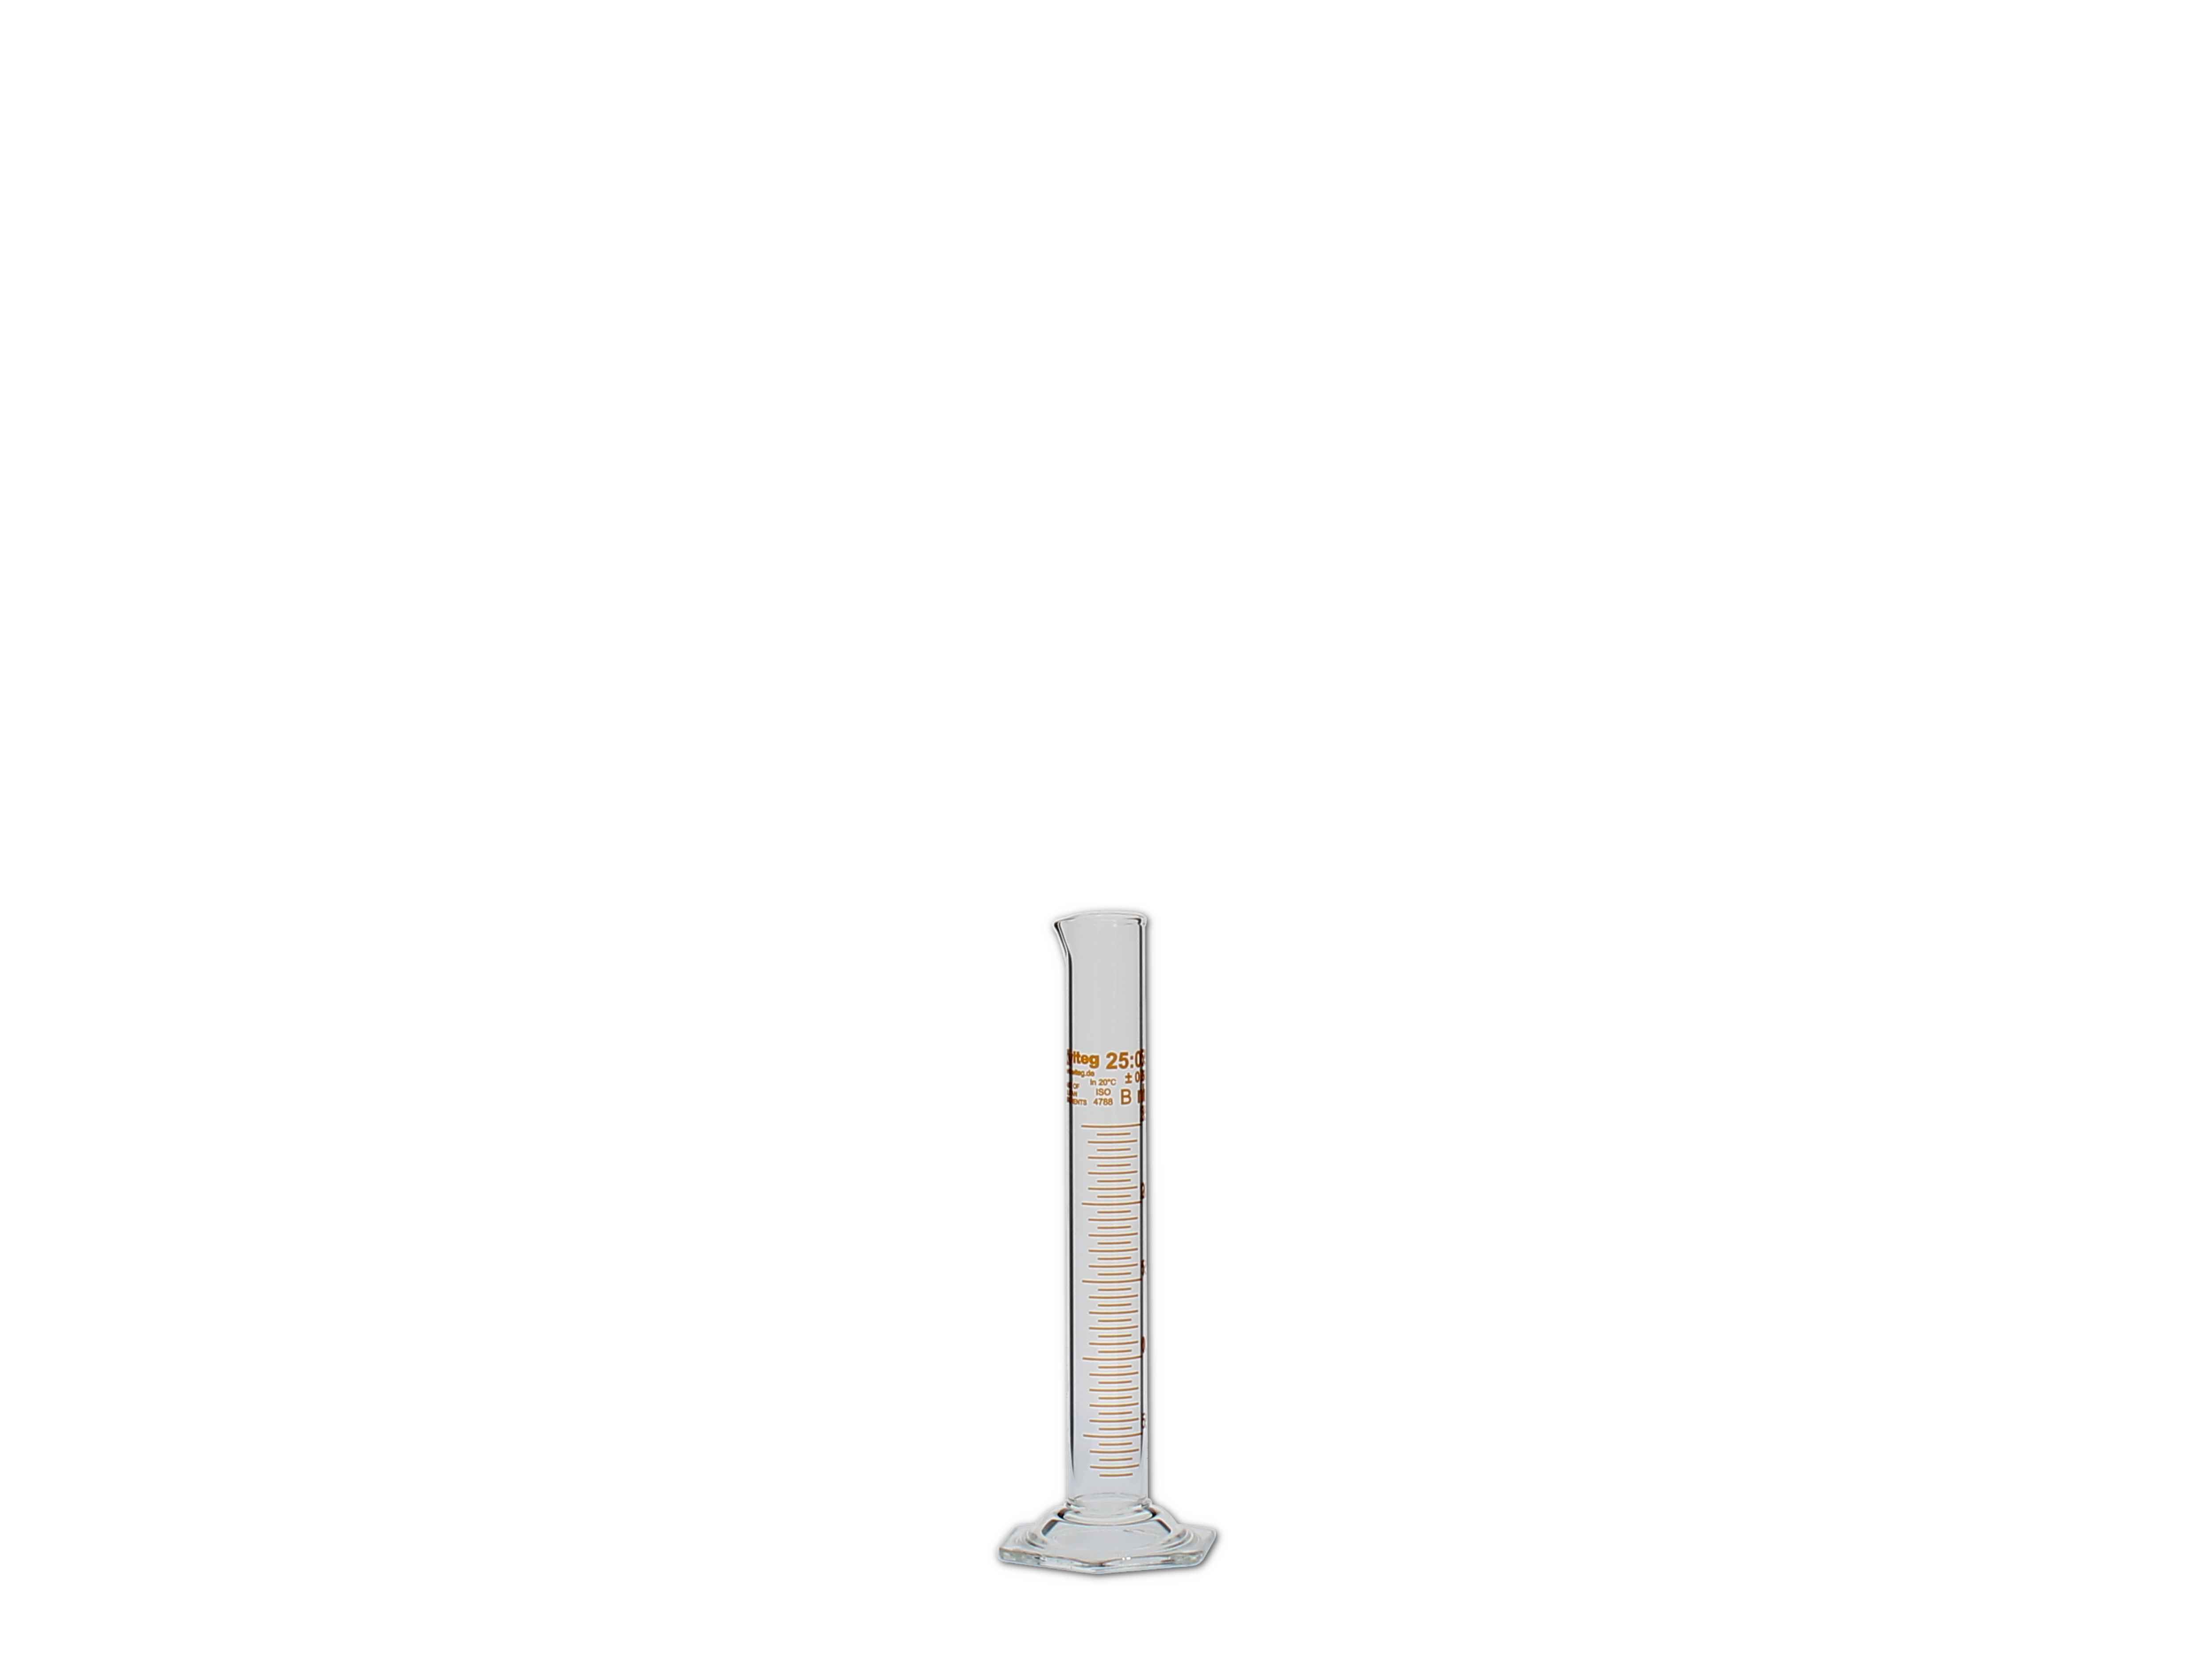    Messzylinder, Glas, graduiert - 25ml (hohe Form)